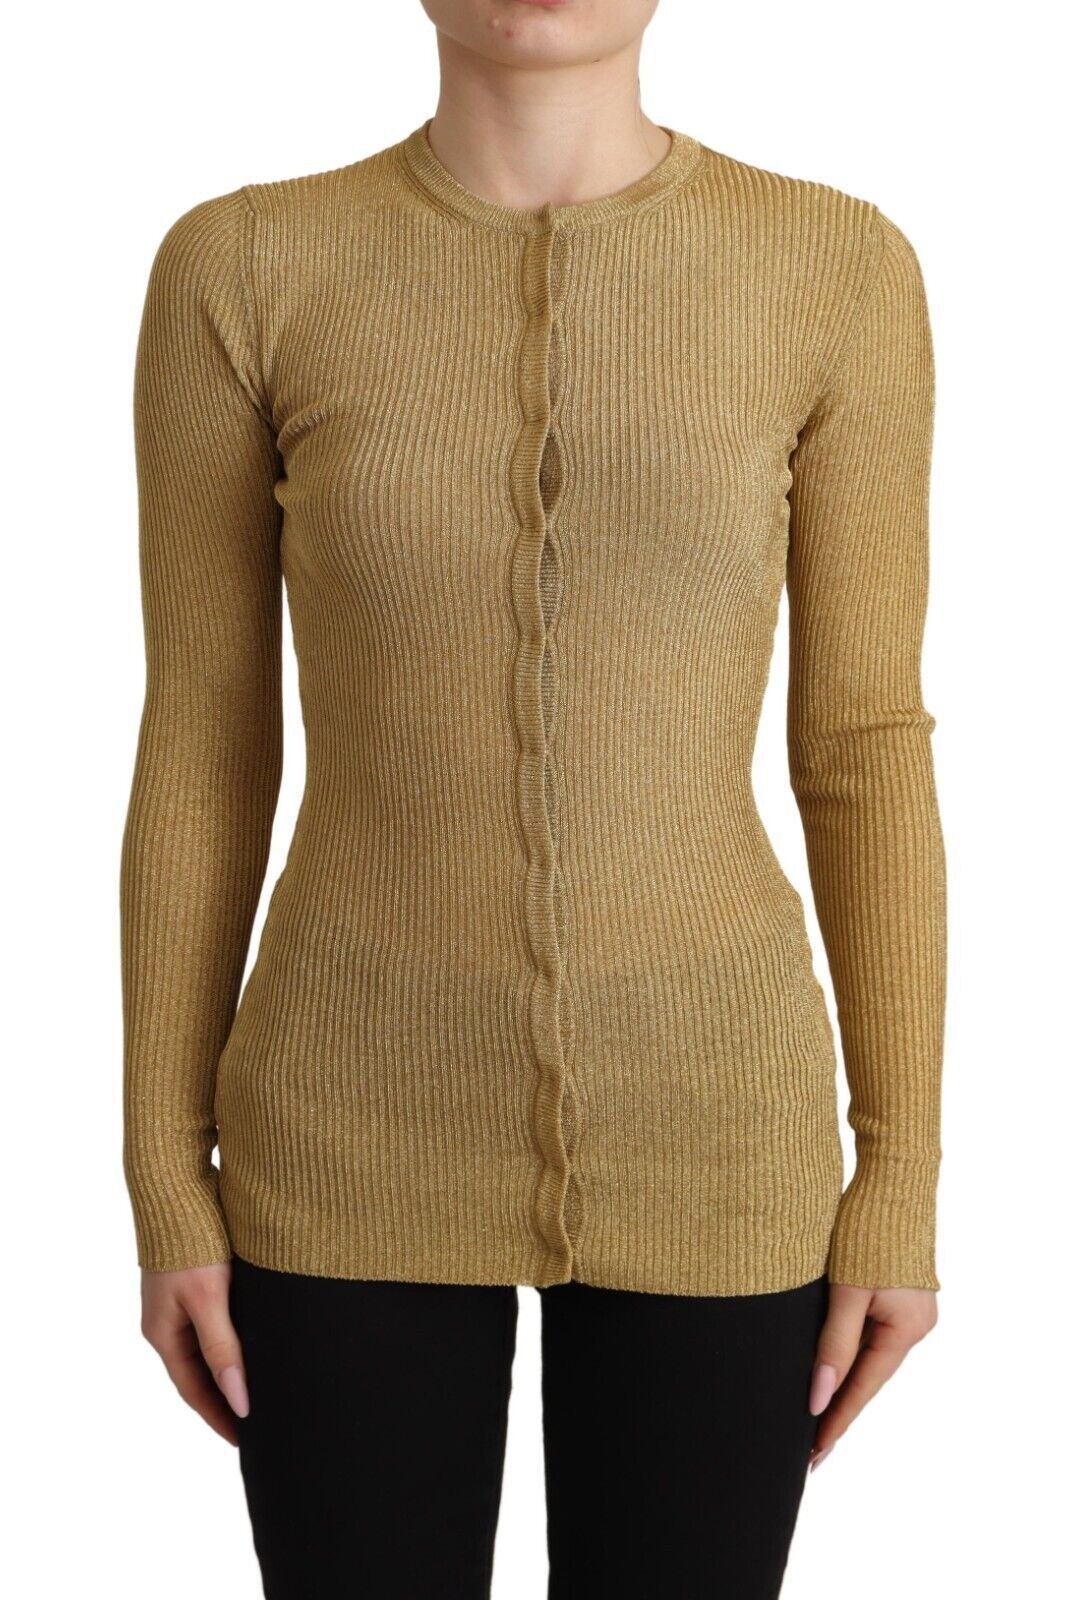 DOLCE & GABBANA Dolce & Gabbana  Viscose Blend Buttons Cardigan Women's Sweater